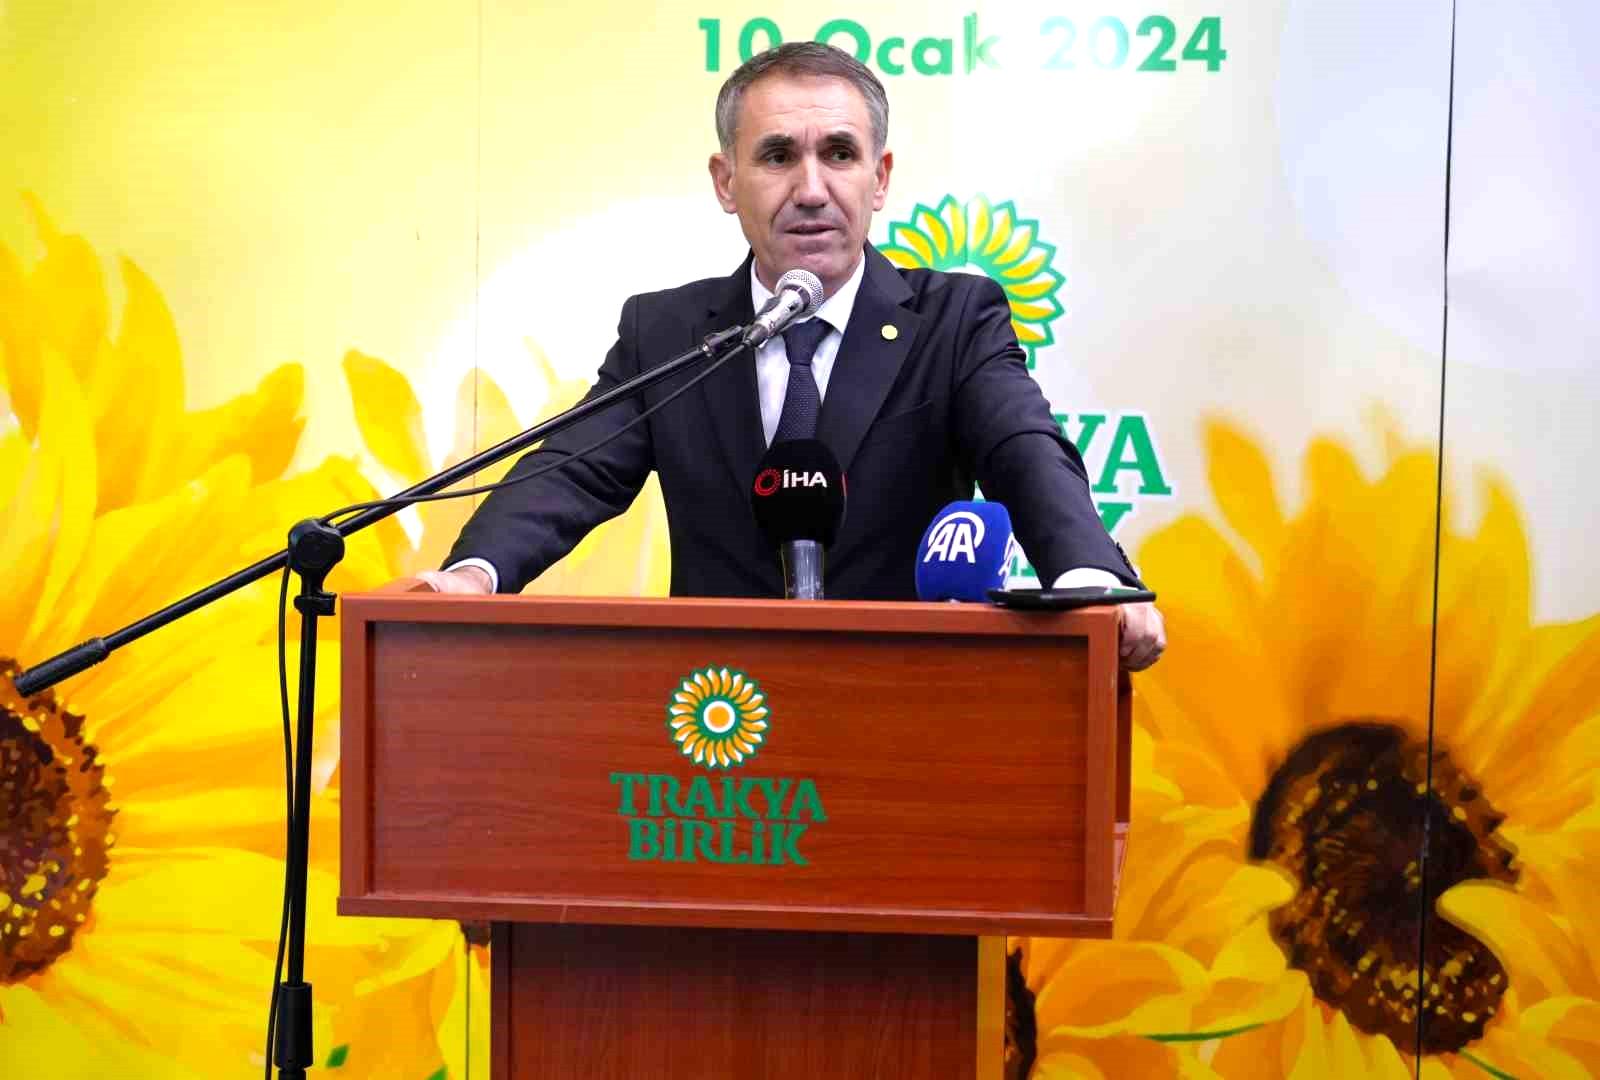 Trakya Birlik Başkanı Kırbiç: “Kuraklık, ayçiçek verimini olumsuz yönde etkilemiştir”